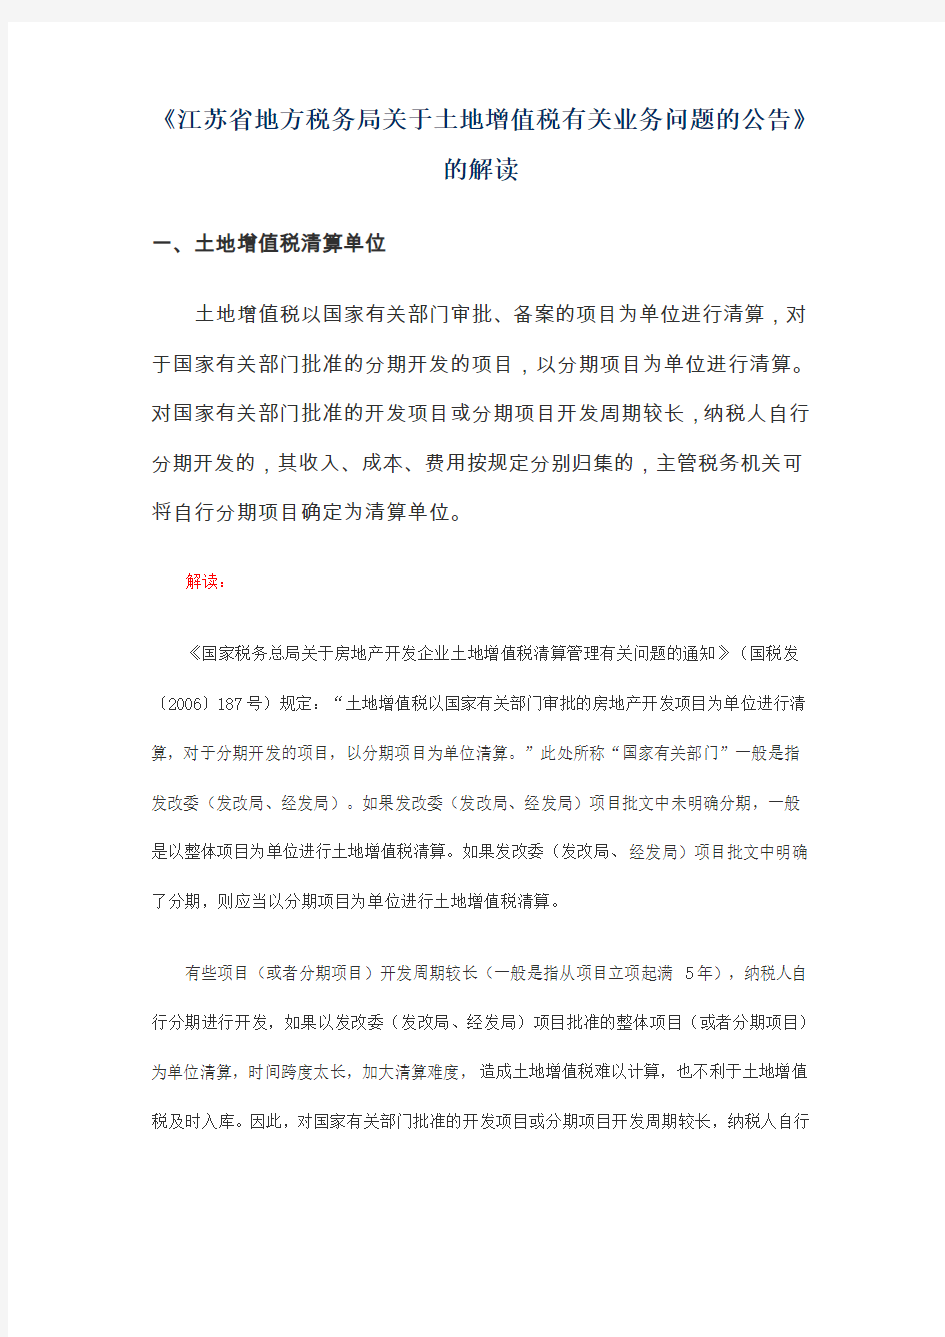 江苏省地方税务局关于土地增值税有关业务问题的公告